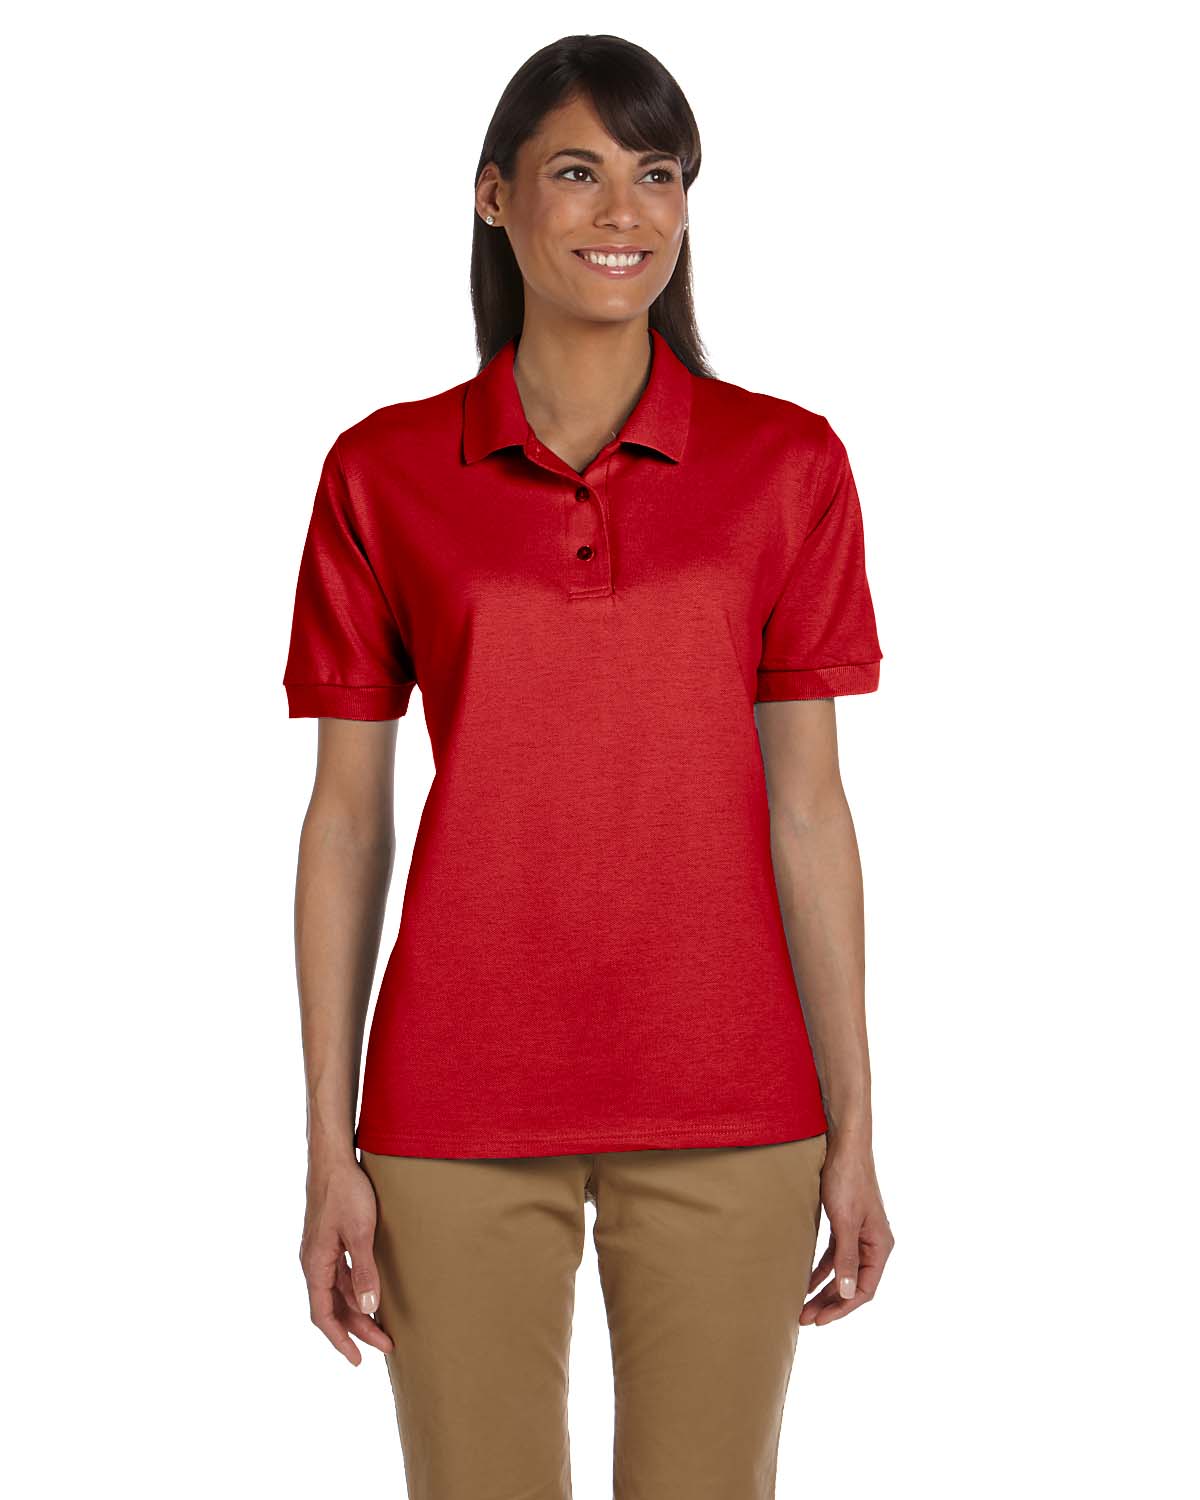 Gildan Womens Polo Shirt 100% Cotton Welt Knit Collar Short Sleeve S ...